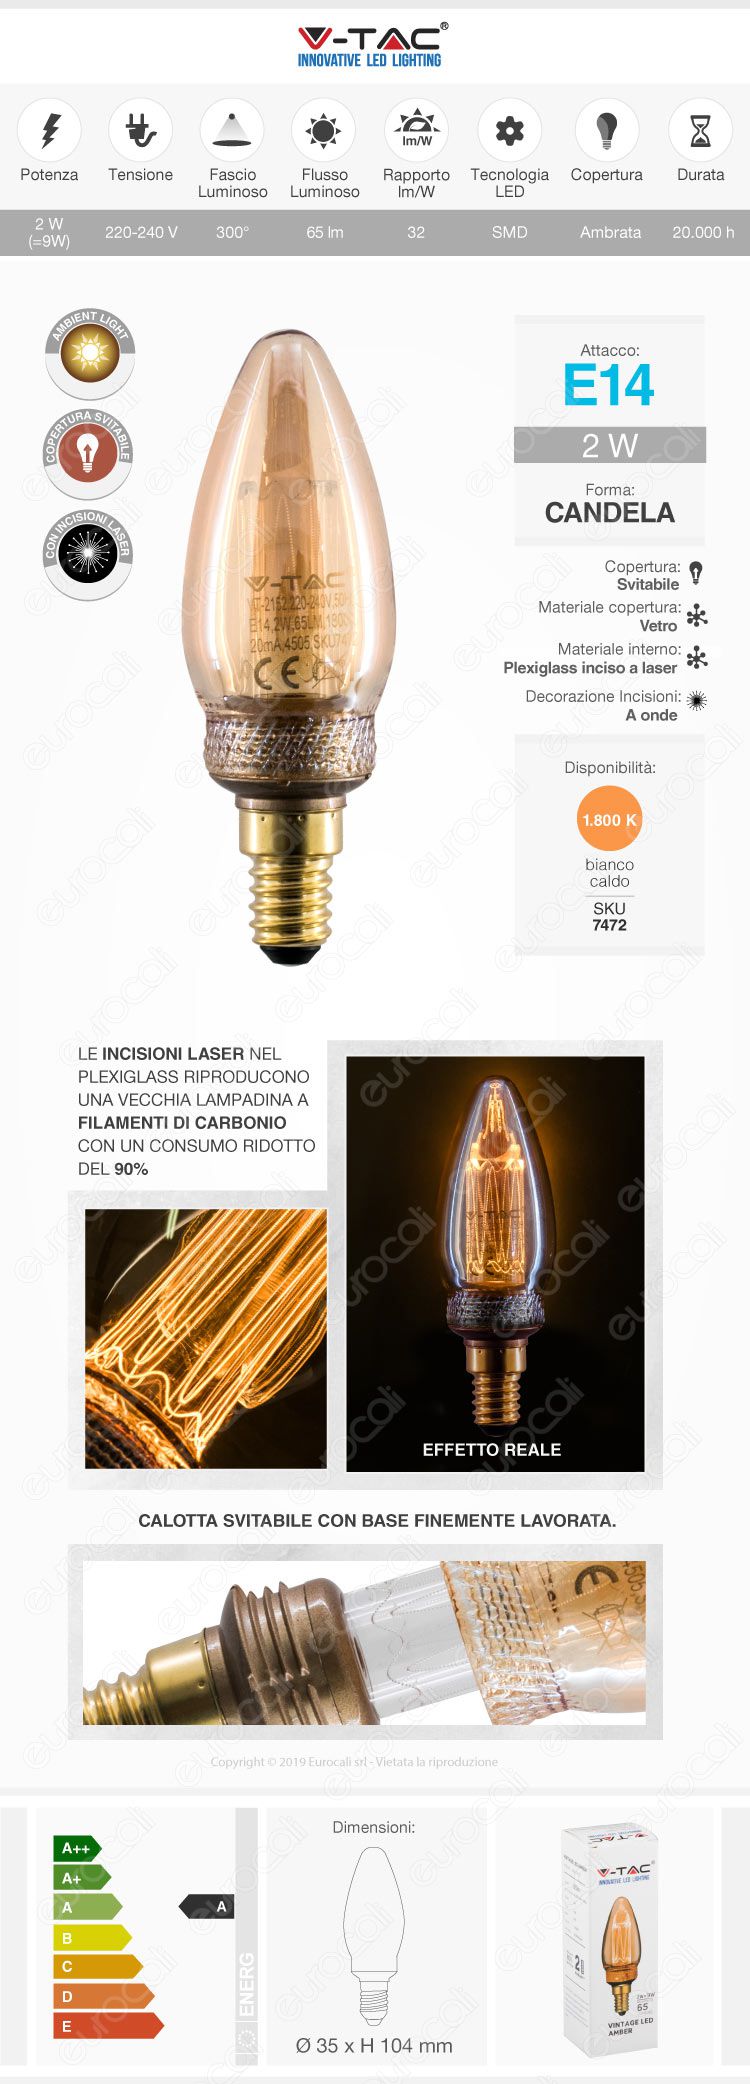 Wiva GlassLight Lampadina LED E27 4W Globo G125 Ambrata con Incisioni Laser